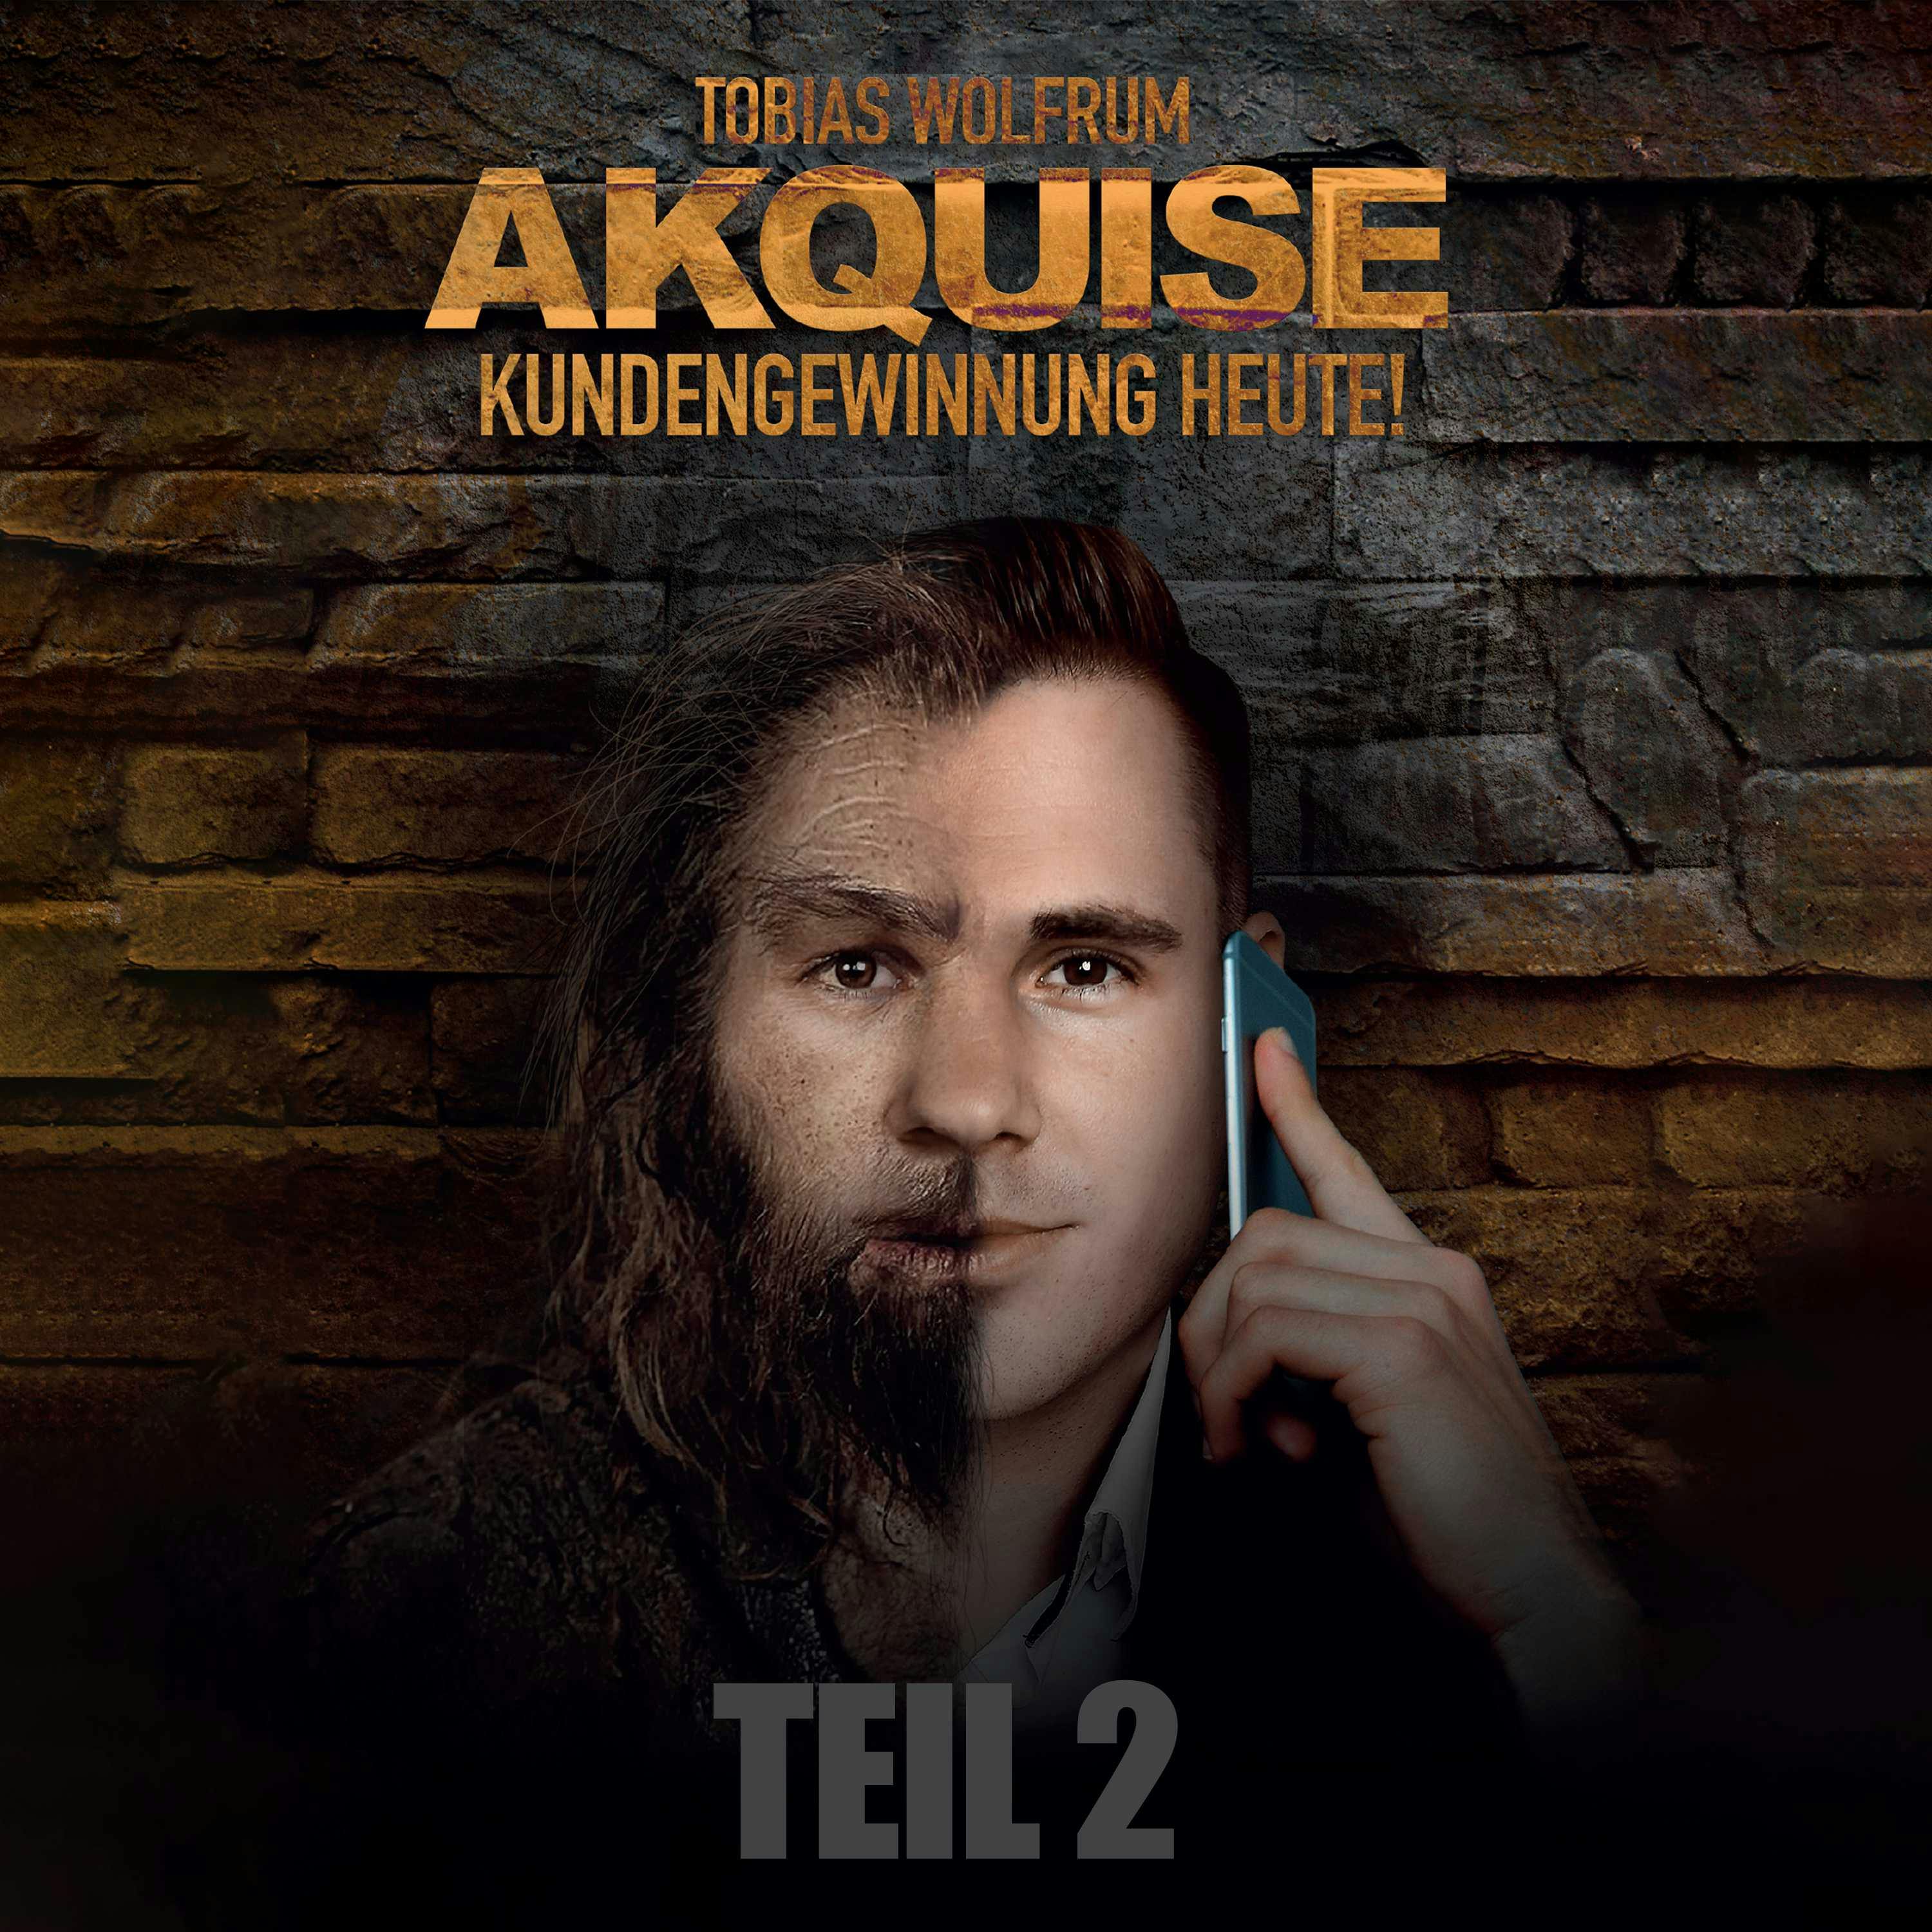 TEIL 2: Akquise - Kundengewinnung heute! - Tobias Wolfrum